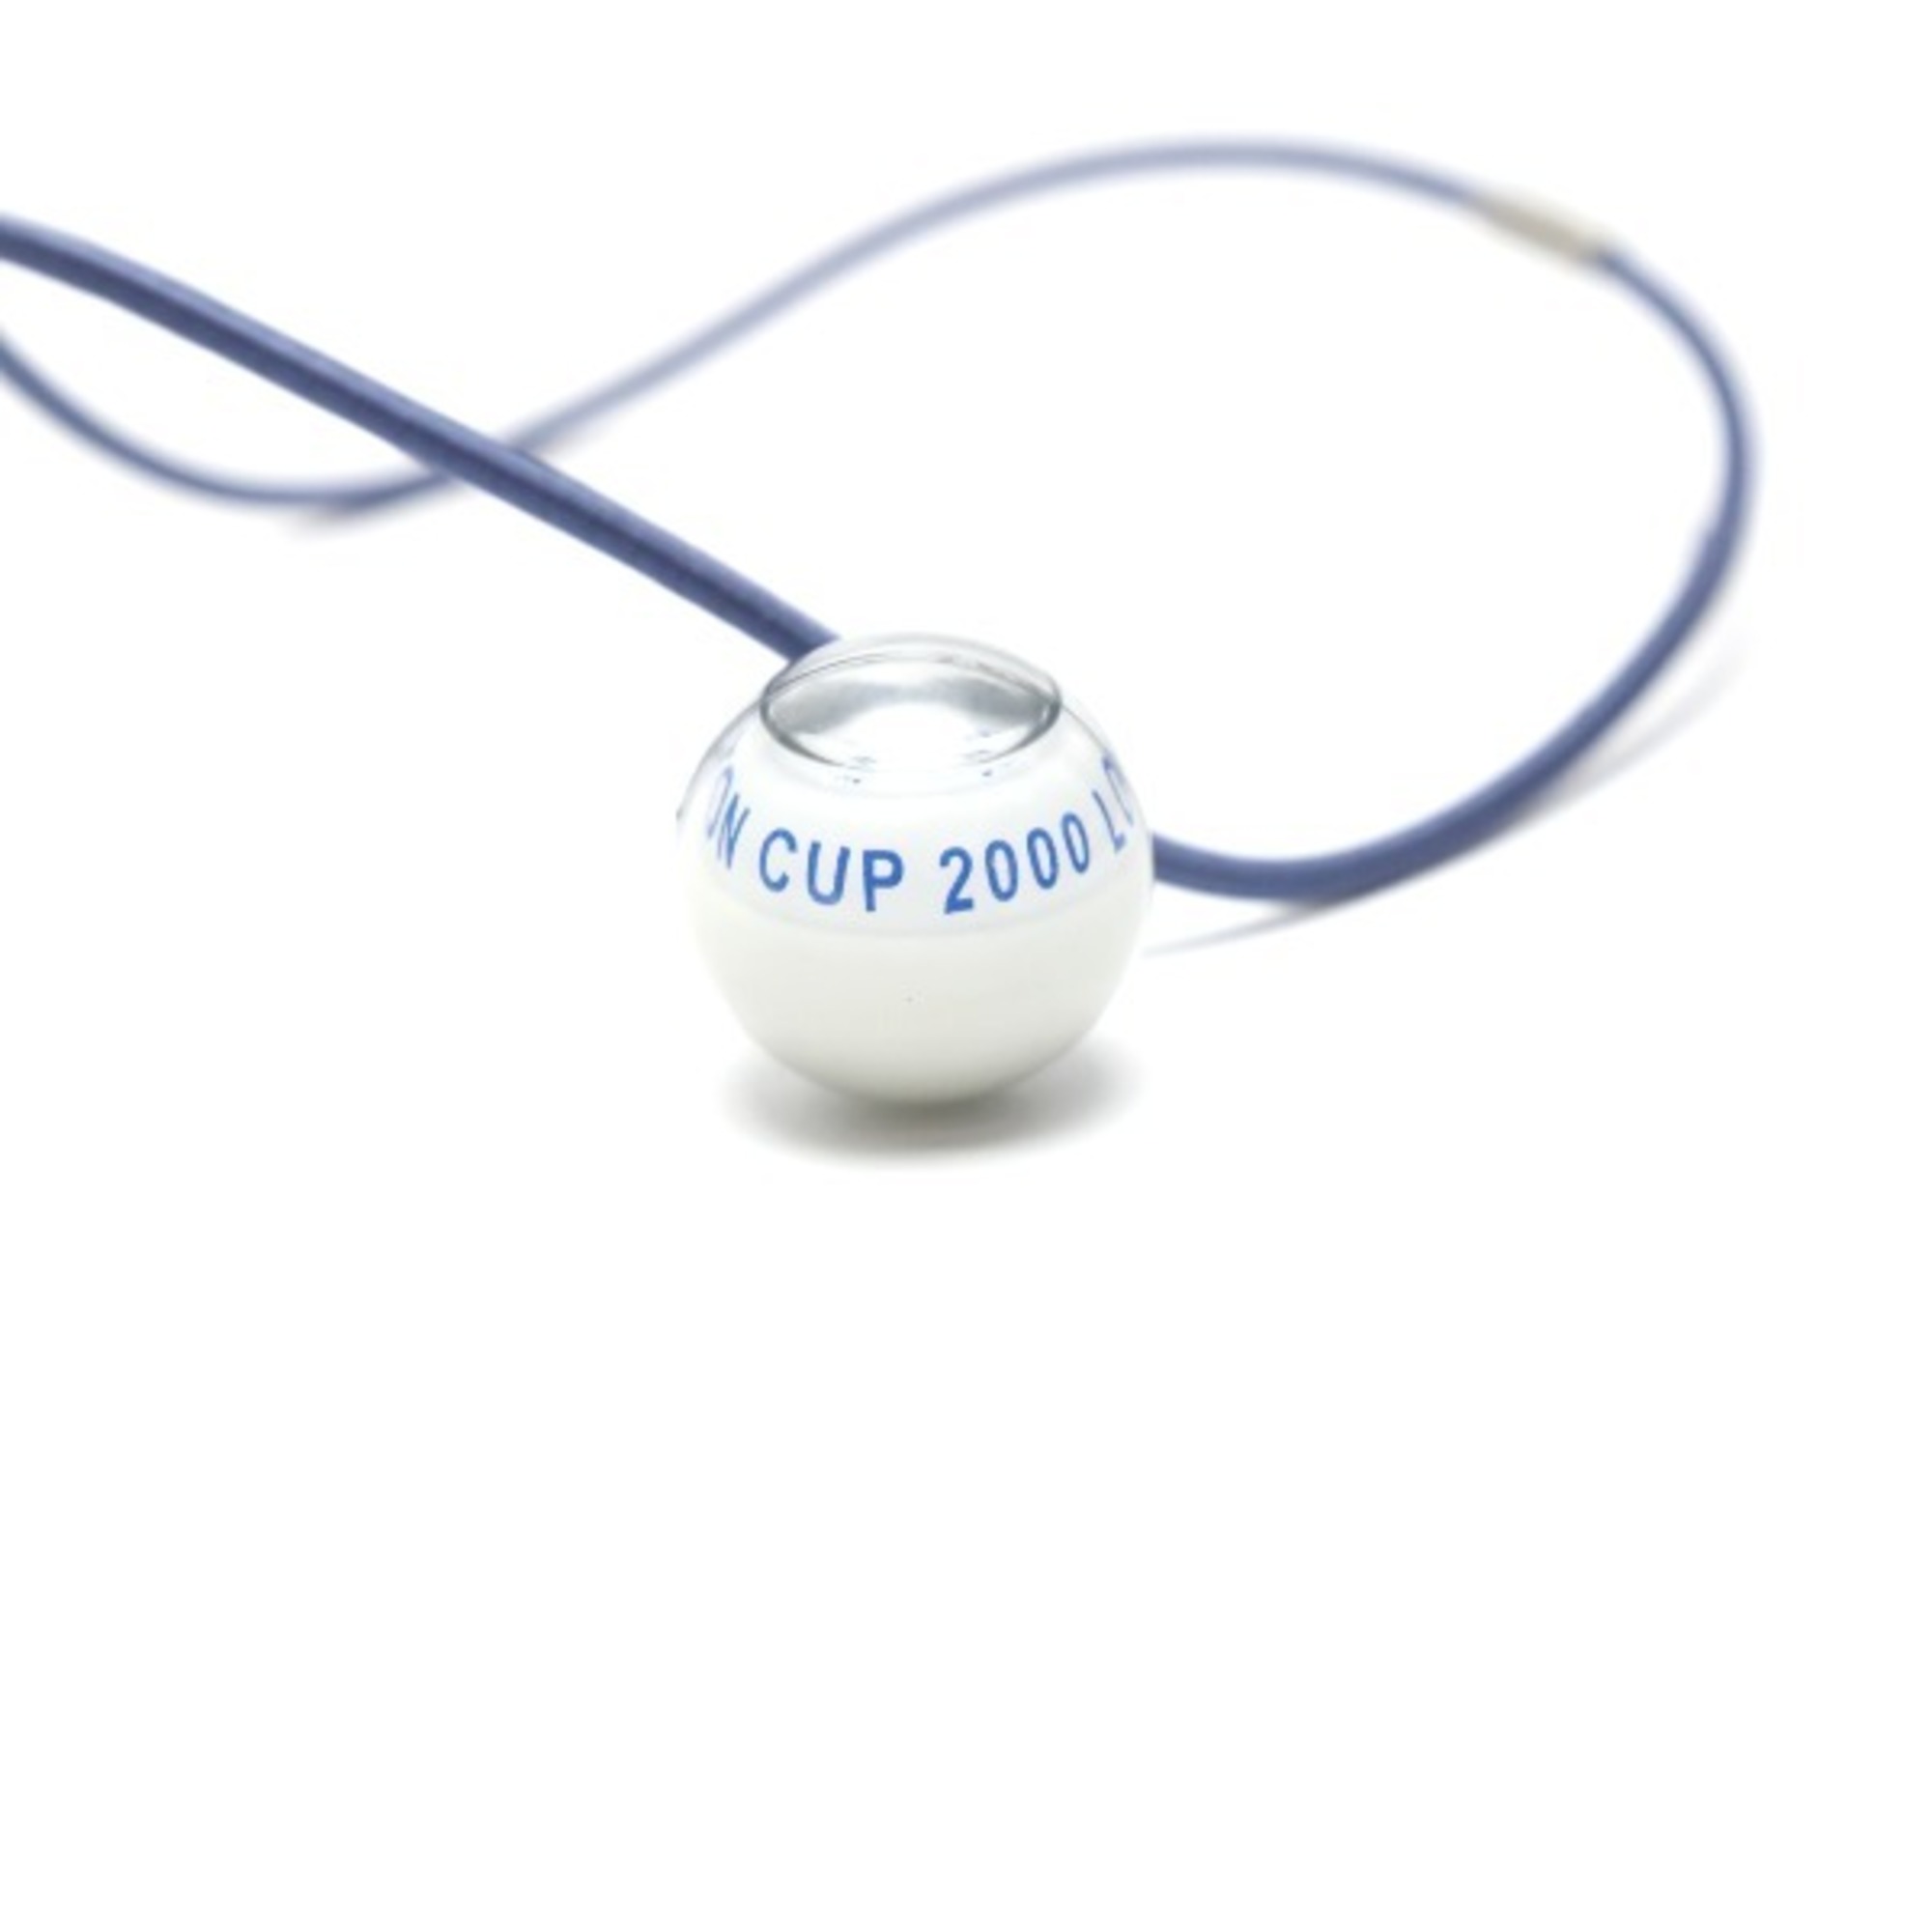 LOUIS VUITTON Necklace Cup Compass Pendant Choker Louis Vuitton Blue LV